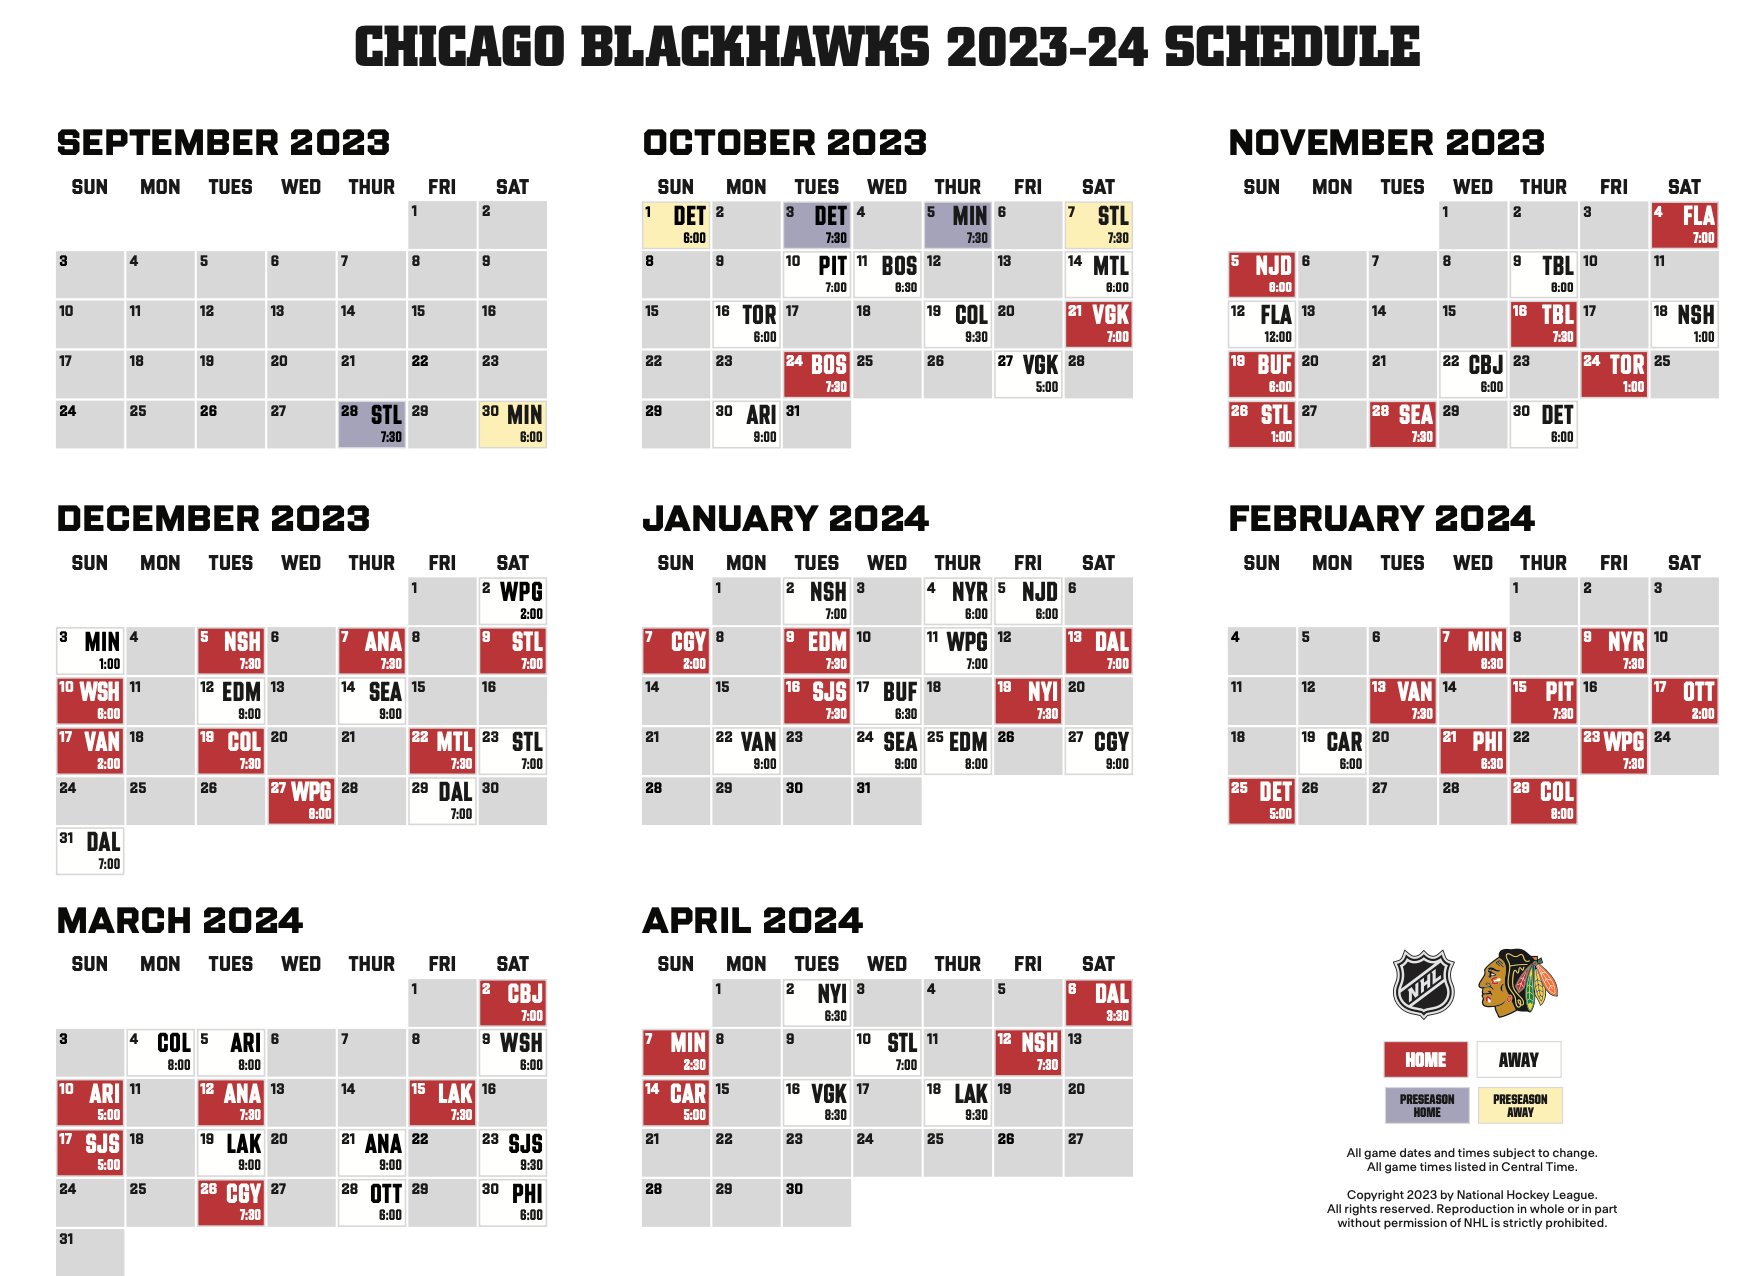 Penguins to open 2023-24 season against Blackhawks